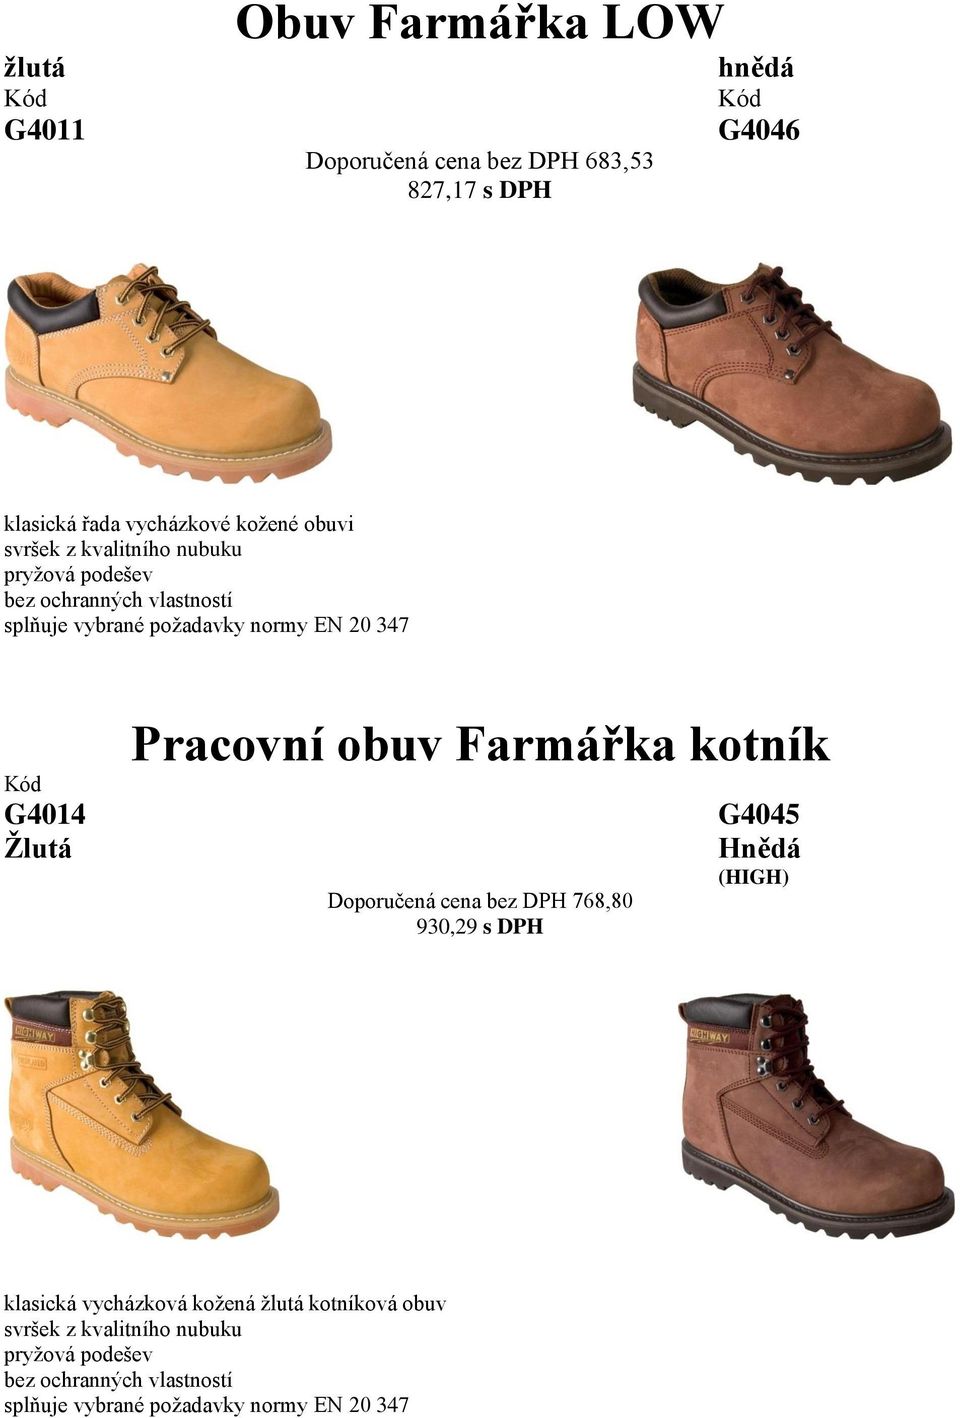 Pracovní obuv Farmářka kotník Doporučená cena bez DPH 768,80 930,29 s DPH G4045 Hnědá (HIGH) klasická vycházková kožená